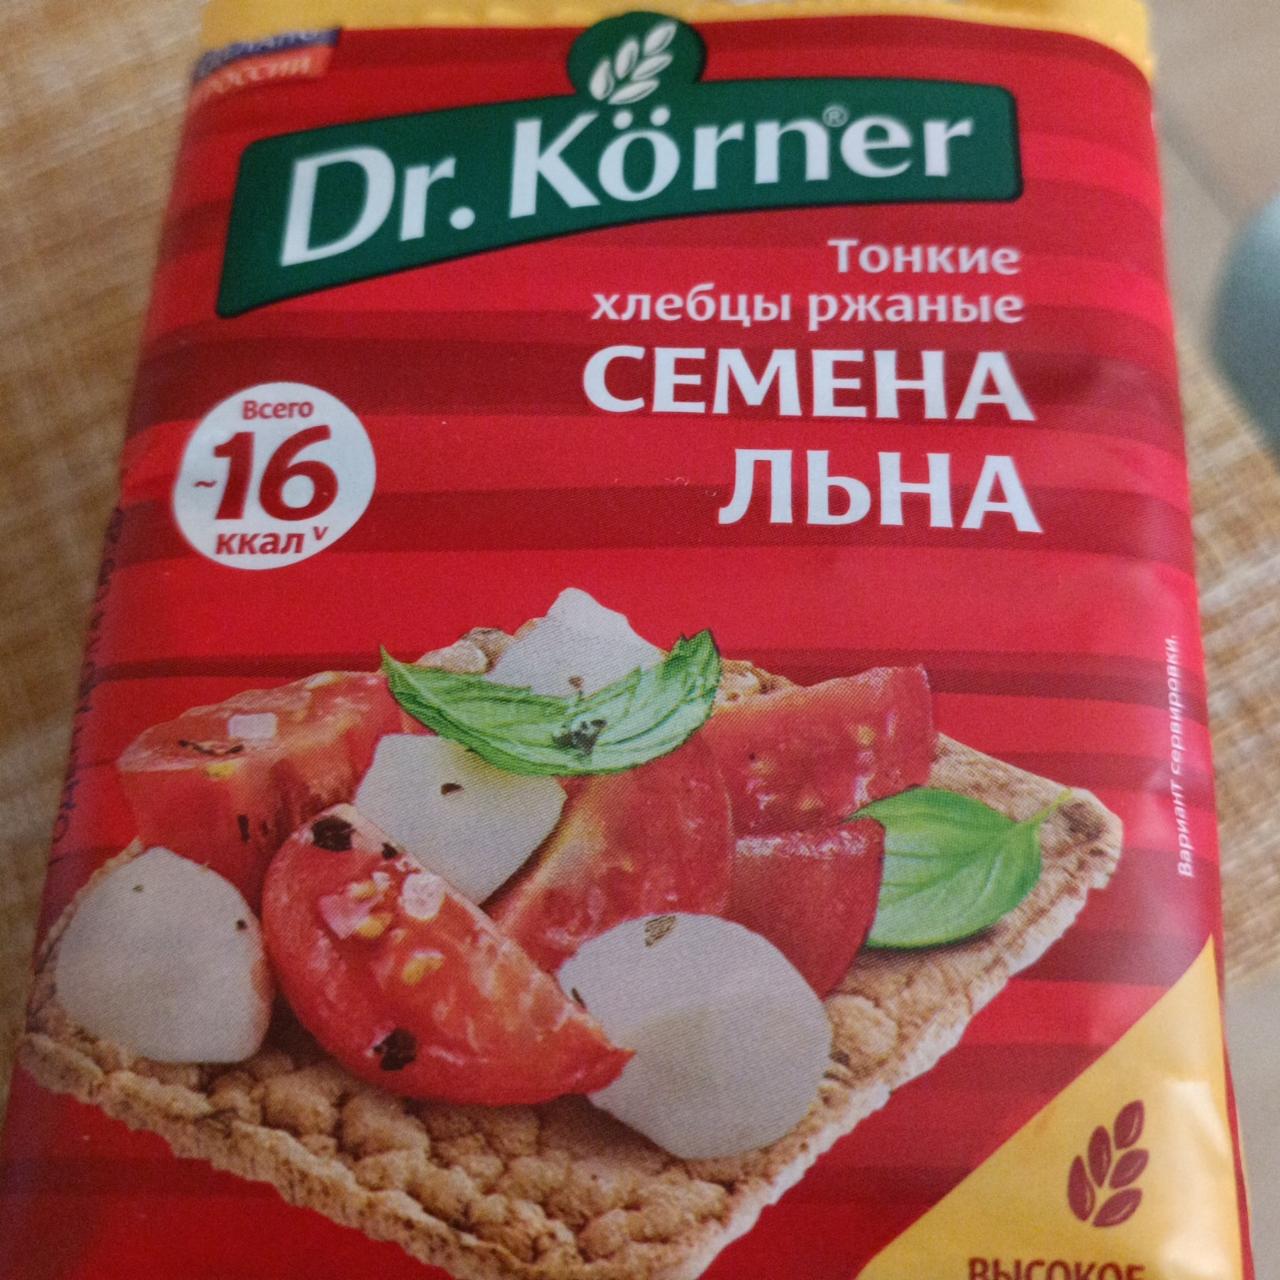 Фото - Ржаные хлебцы семена льна Dr. Korner